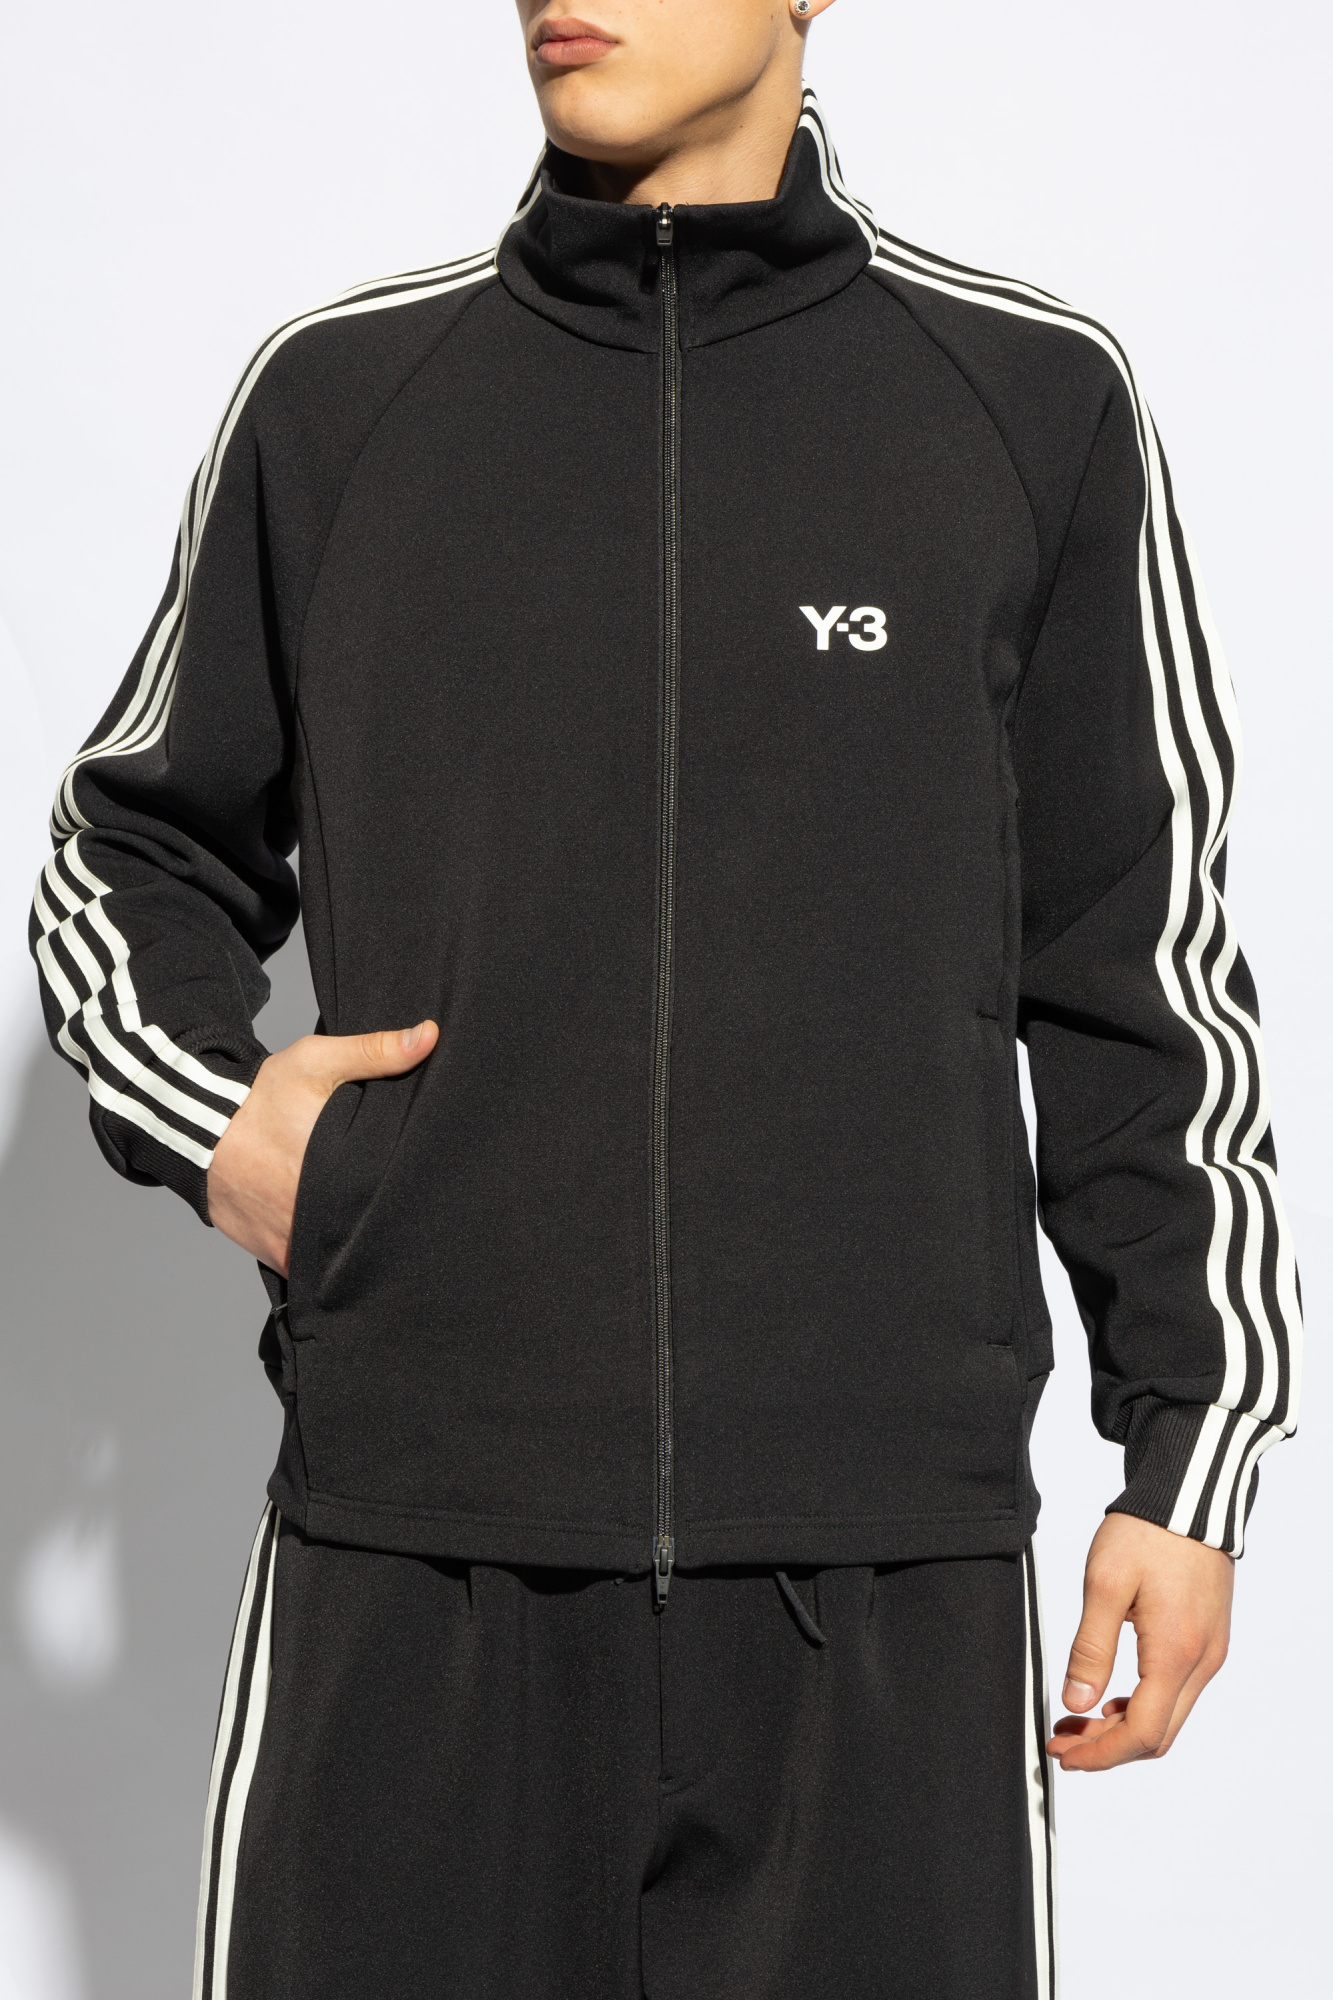 Y-3 Yohji Yamamoto Stand-up Collar Sweatshirt | Men's Clothing 